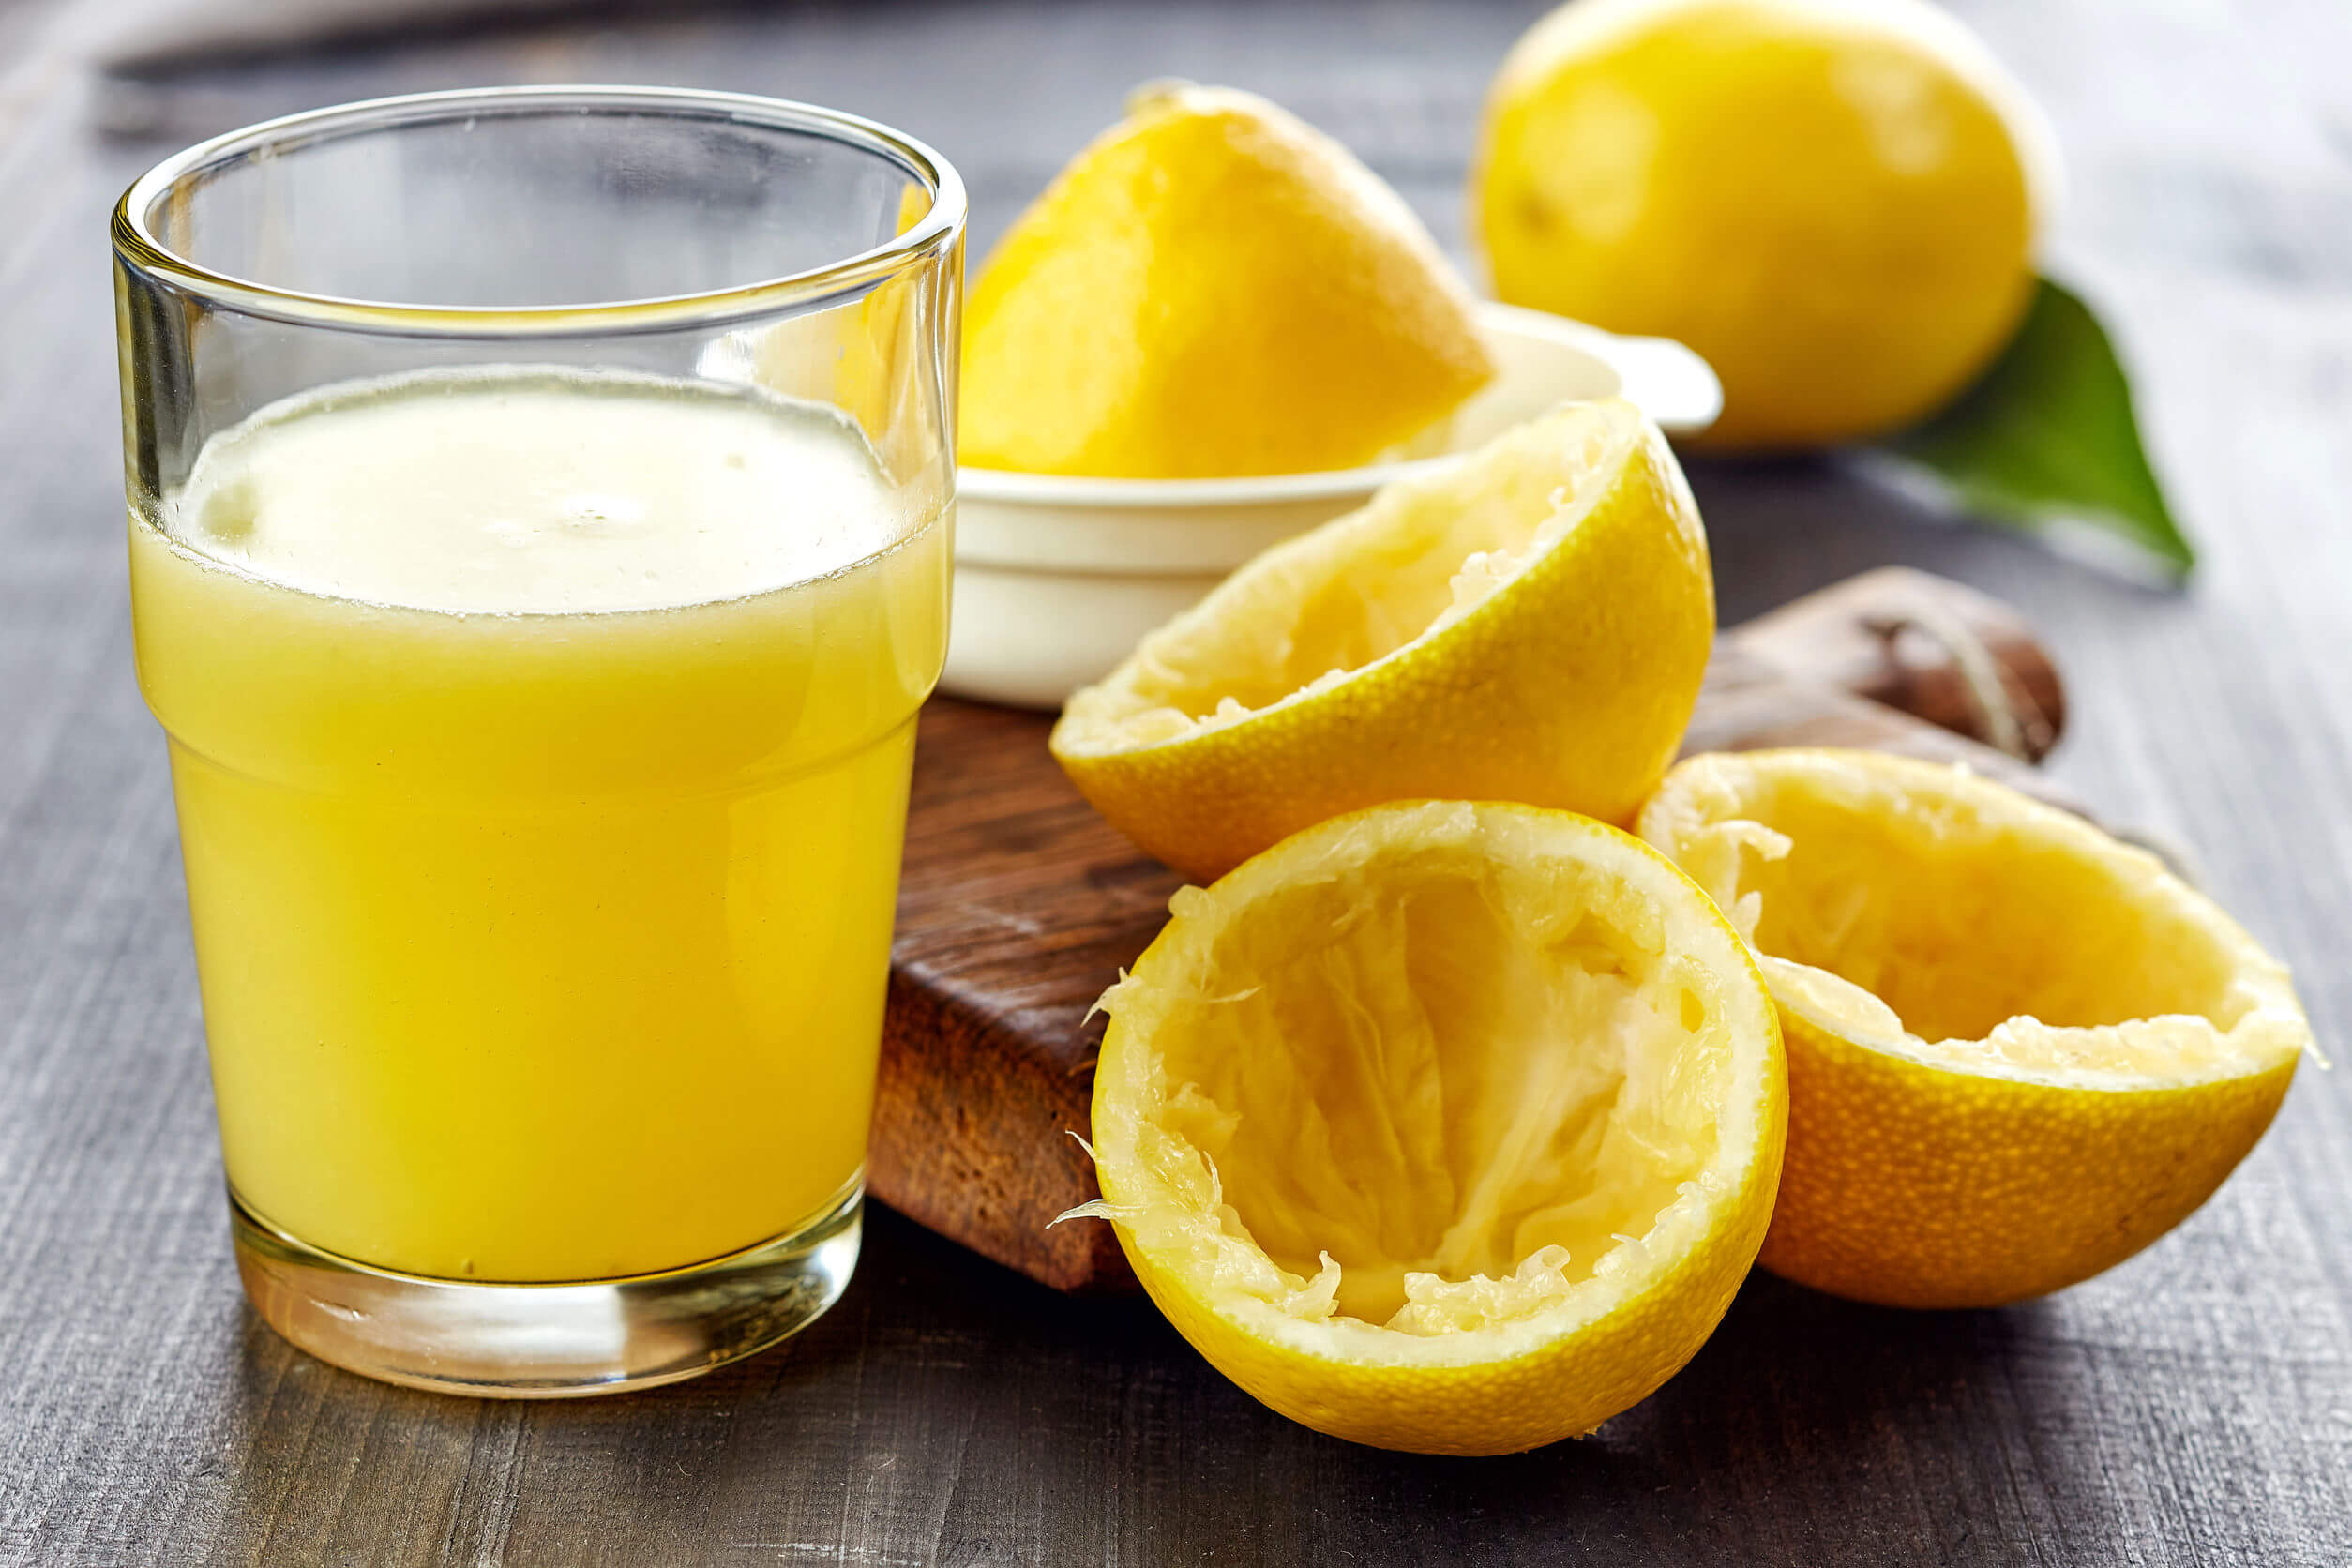 La dieta del limón: ¿es efectiva?